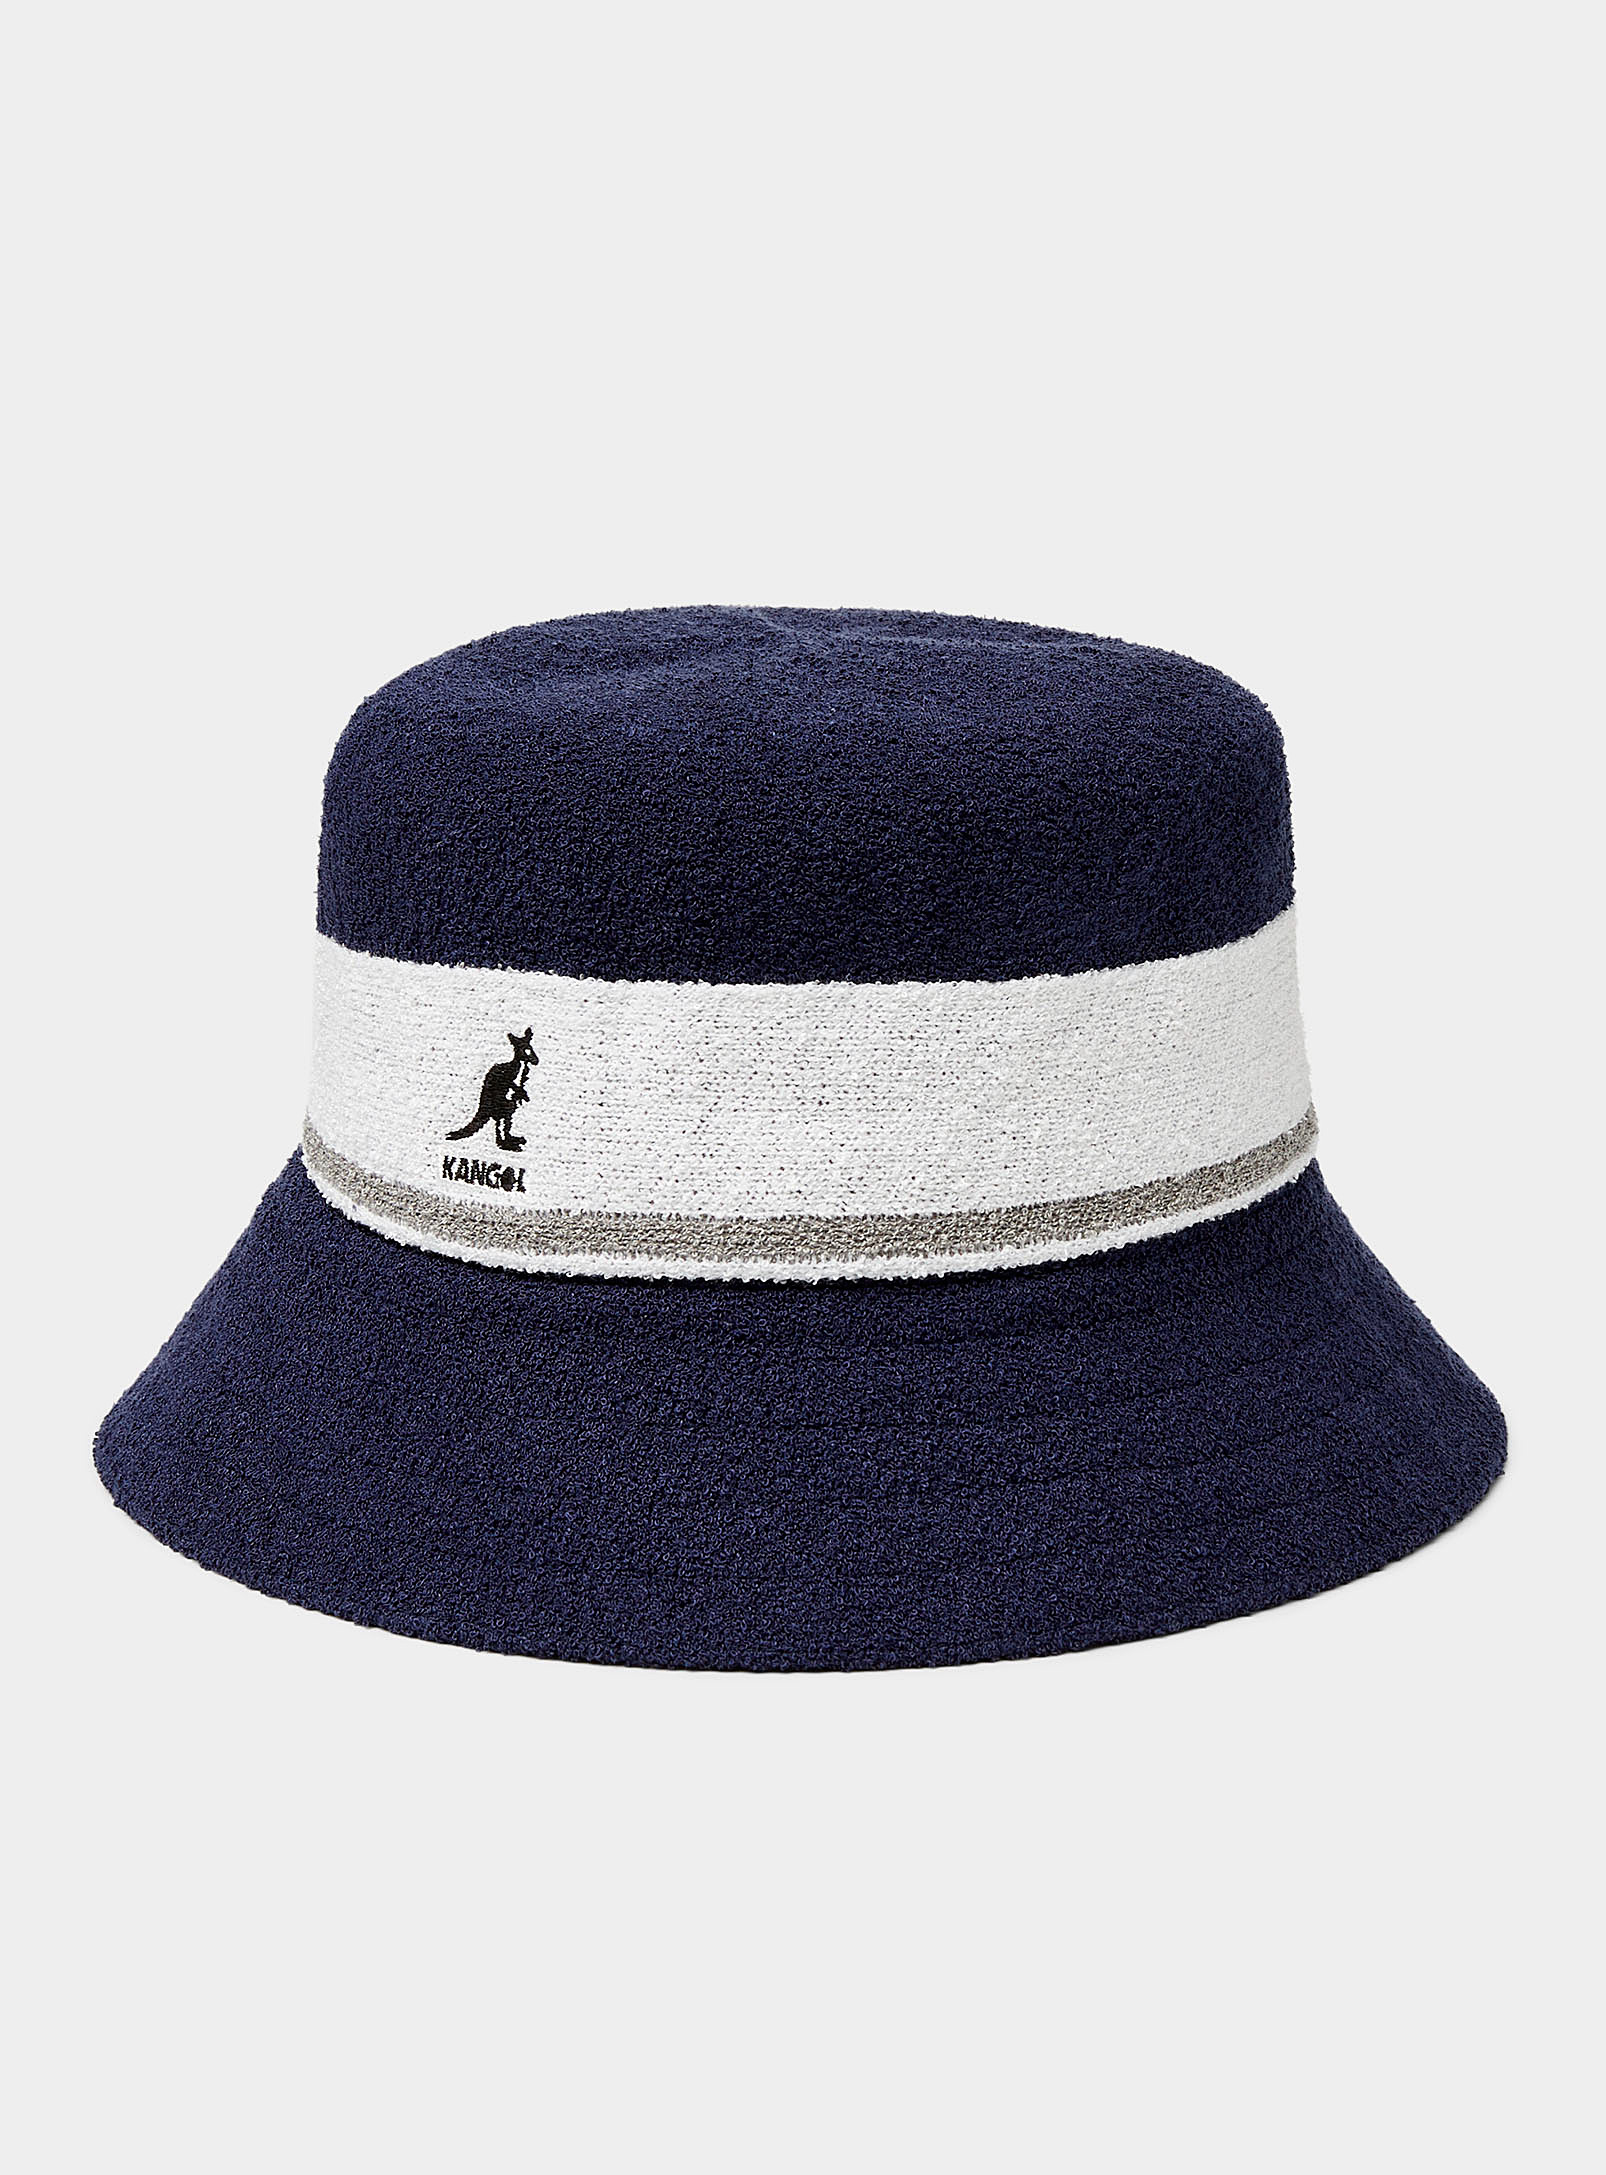 Kangol Contrast Stripe Terry Bucket Hat In Marine Blue